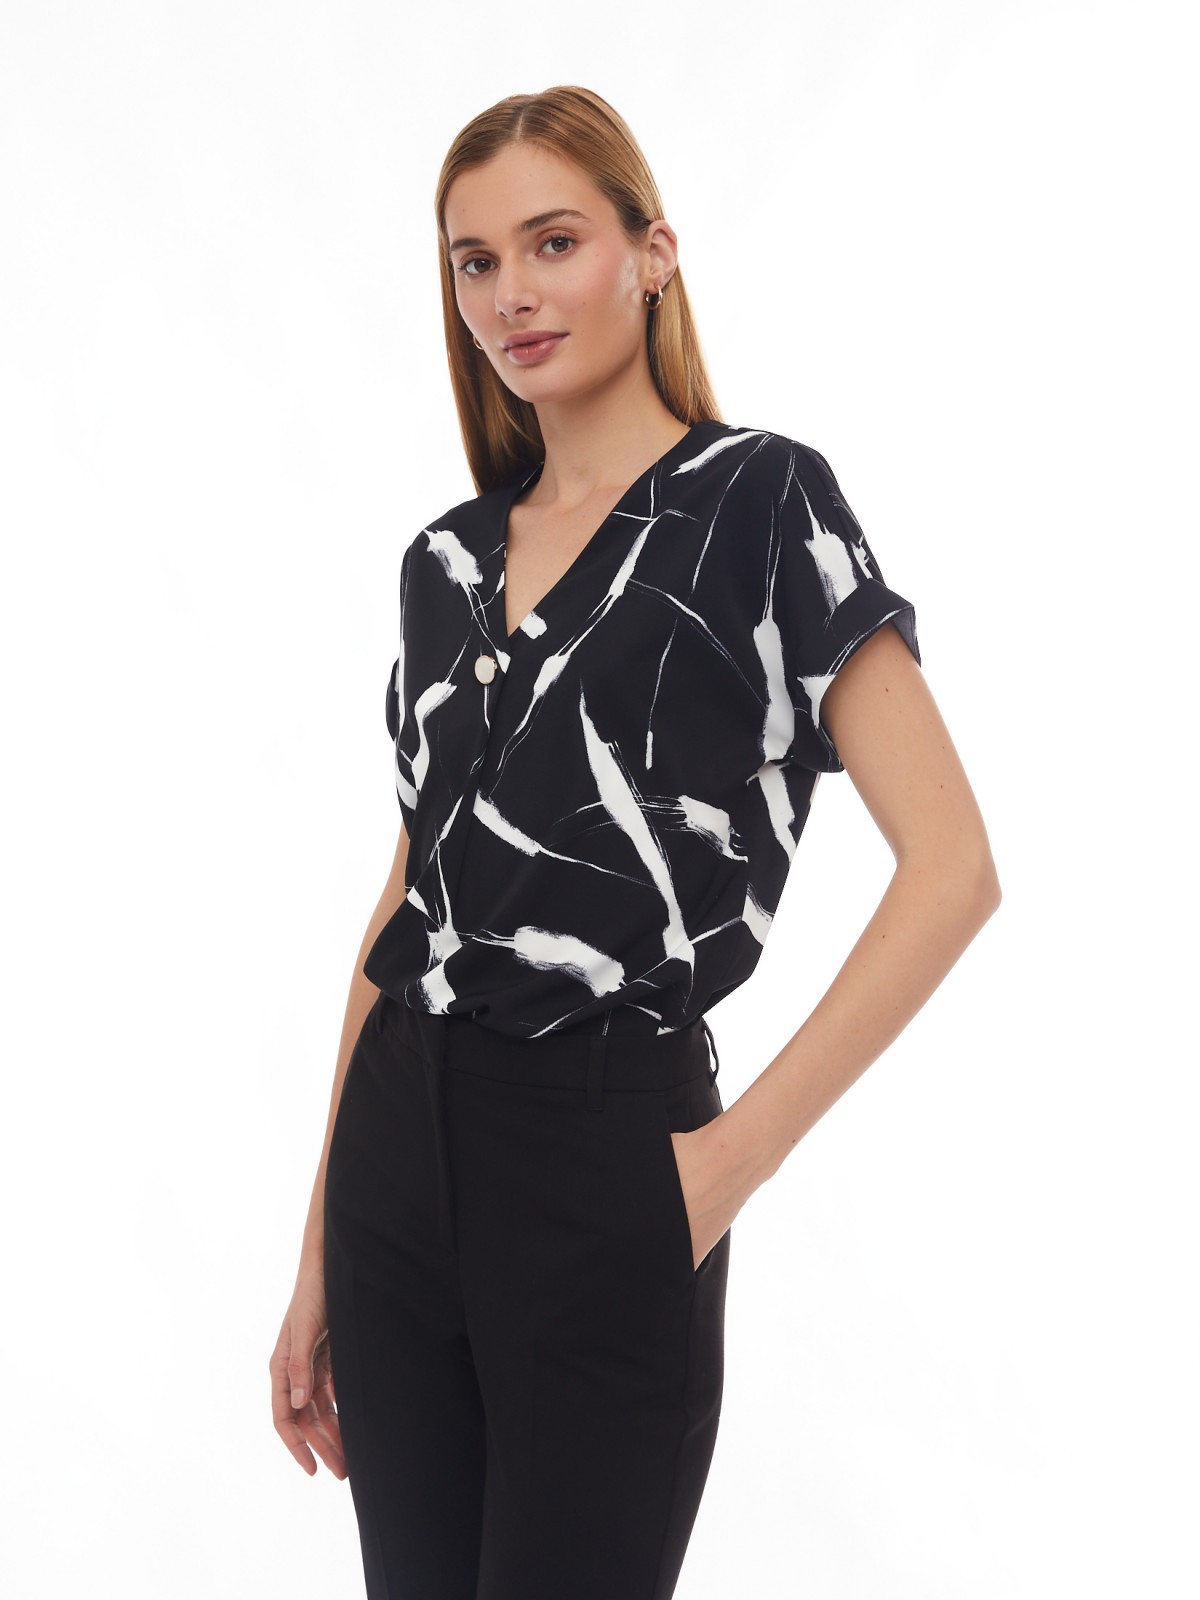 Принтованная блузка с вырезом и коротким рукавом zolla 02413128Y072, цвет черный, размер S